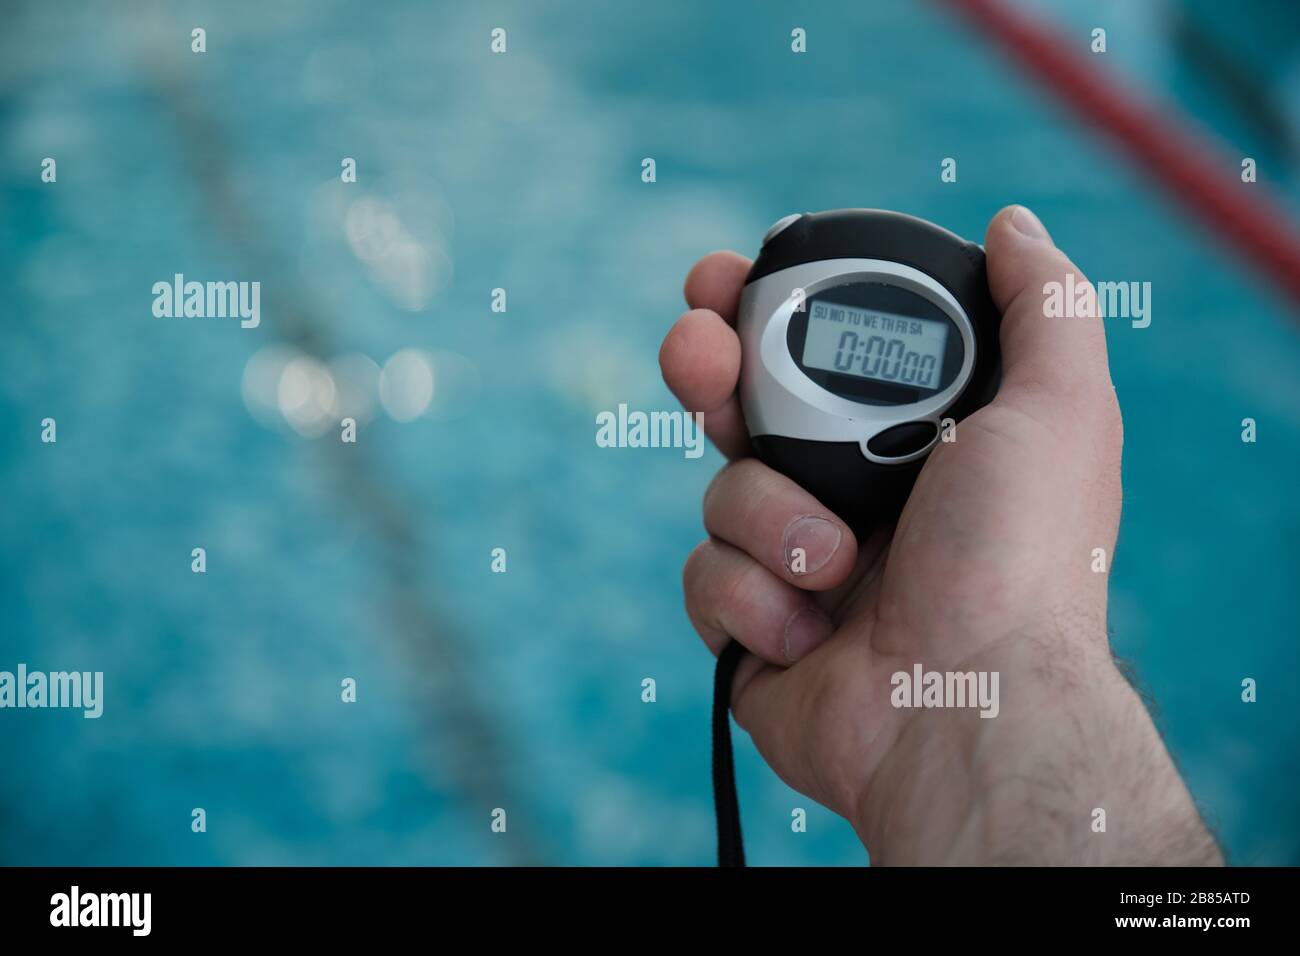 Gros plan d'un autocar non reconnaissable tenant le chronomètre tout en mesurant le temps de nage au bord de la piscine Banque D'Images